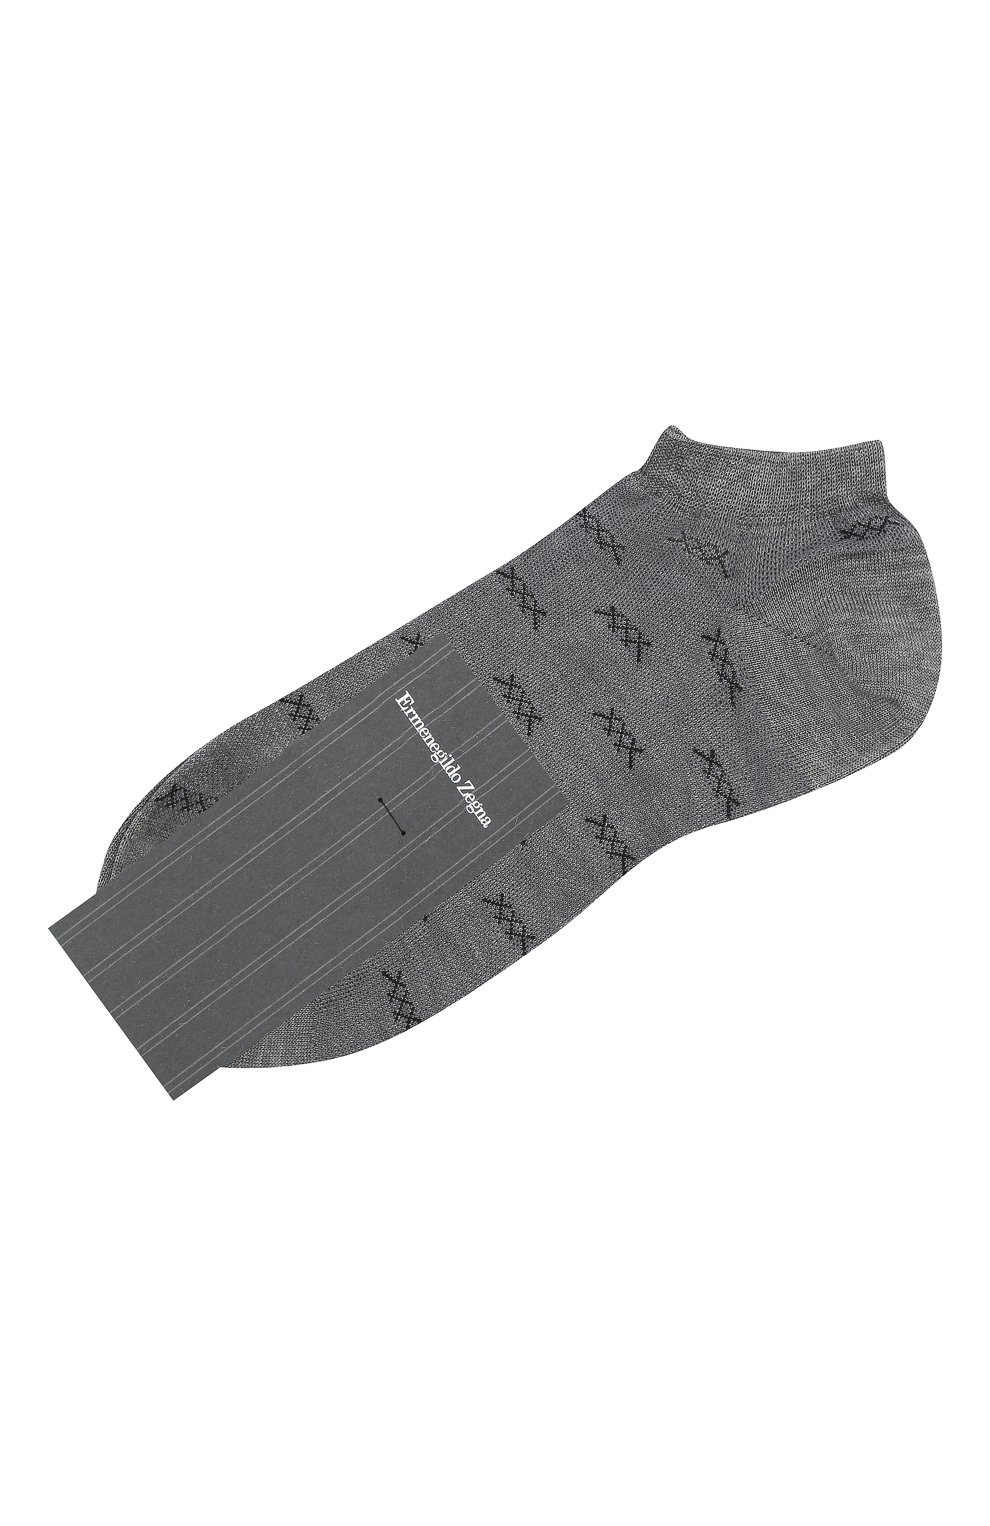 Мужские хлопковые носки ERMENEGILDO ZEGNA светло-серого цвета, арт. N5V023250 | Фото 1 (Кросс-КТ: бельё; Материал внешний: Хлопок)